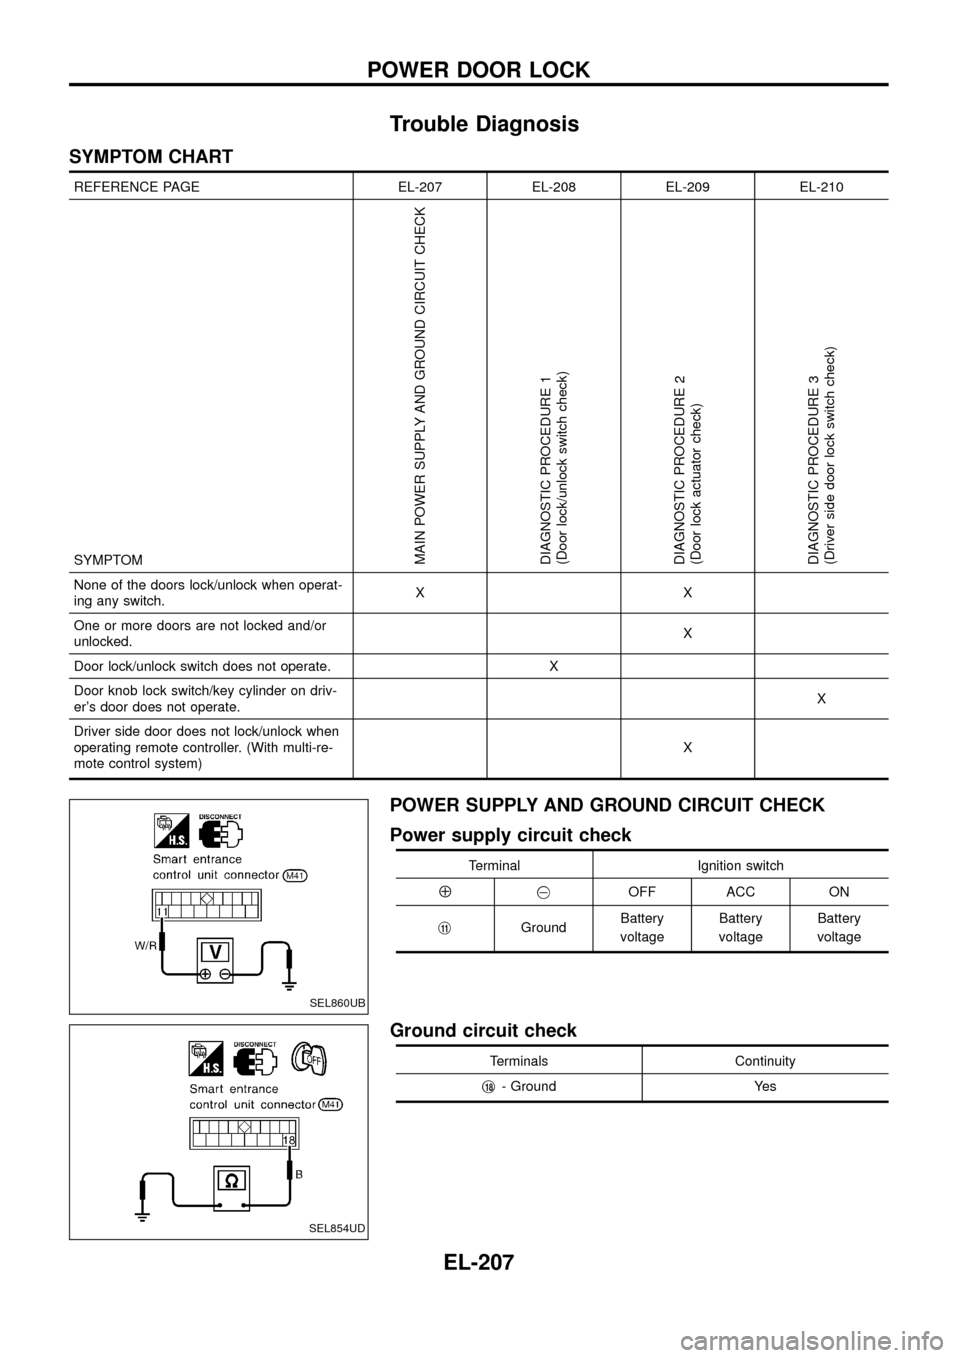 NISSAN PATROL 1998 Y61 / 5.G Electrical System Workshop Manual Trouble Diagnosis
SYMPTOM CHART
REFERENCE PAGE EL-207 EL-208 EL-209 EL-210
SYMPTOM
MAIN POWER SUPPLY AND GROUND CIRCUIT CHECK
DIAGNOSTIC PROCEDURE 1
(Door lock/unlock switch check)
DIAGNOSTIC PROCEDUR